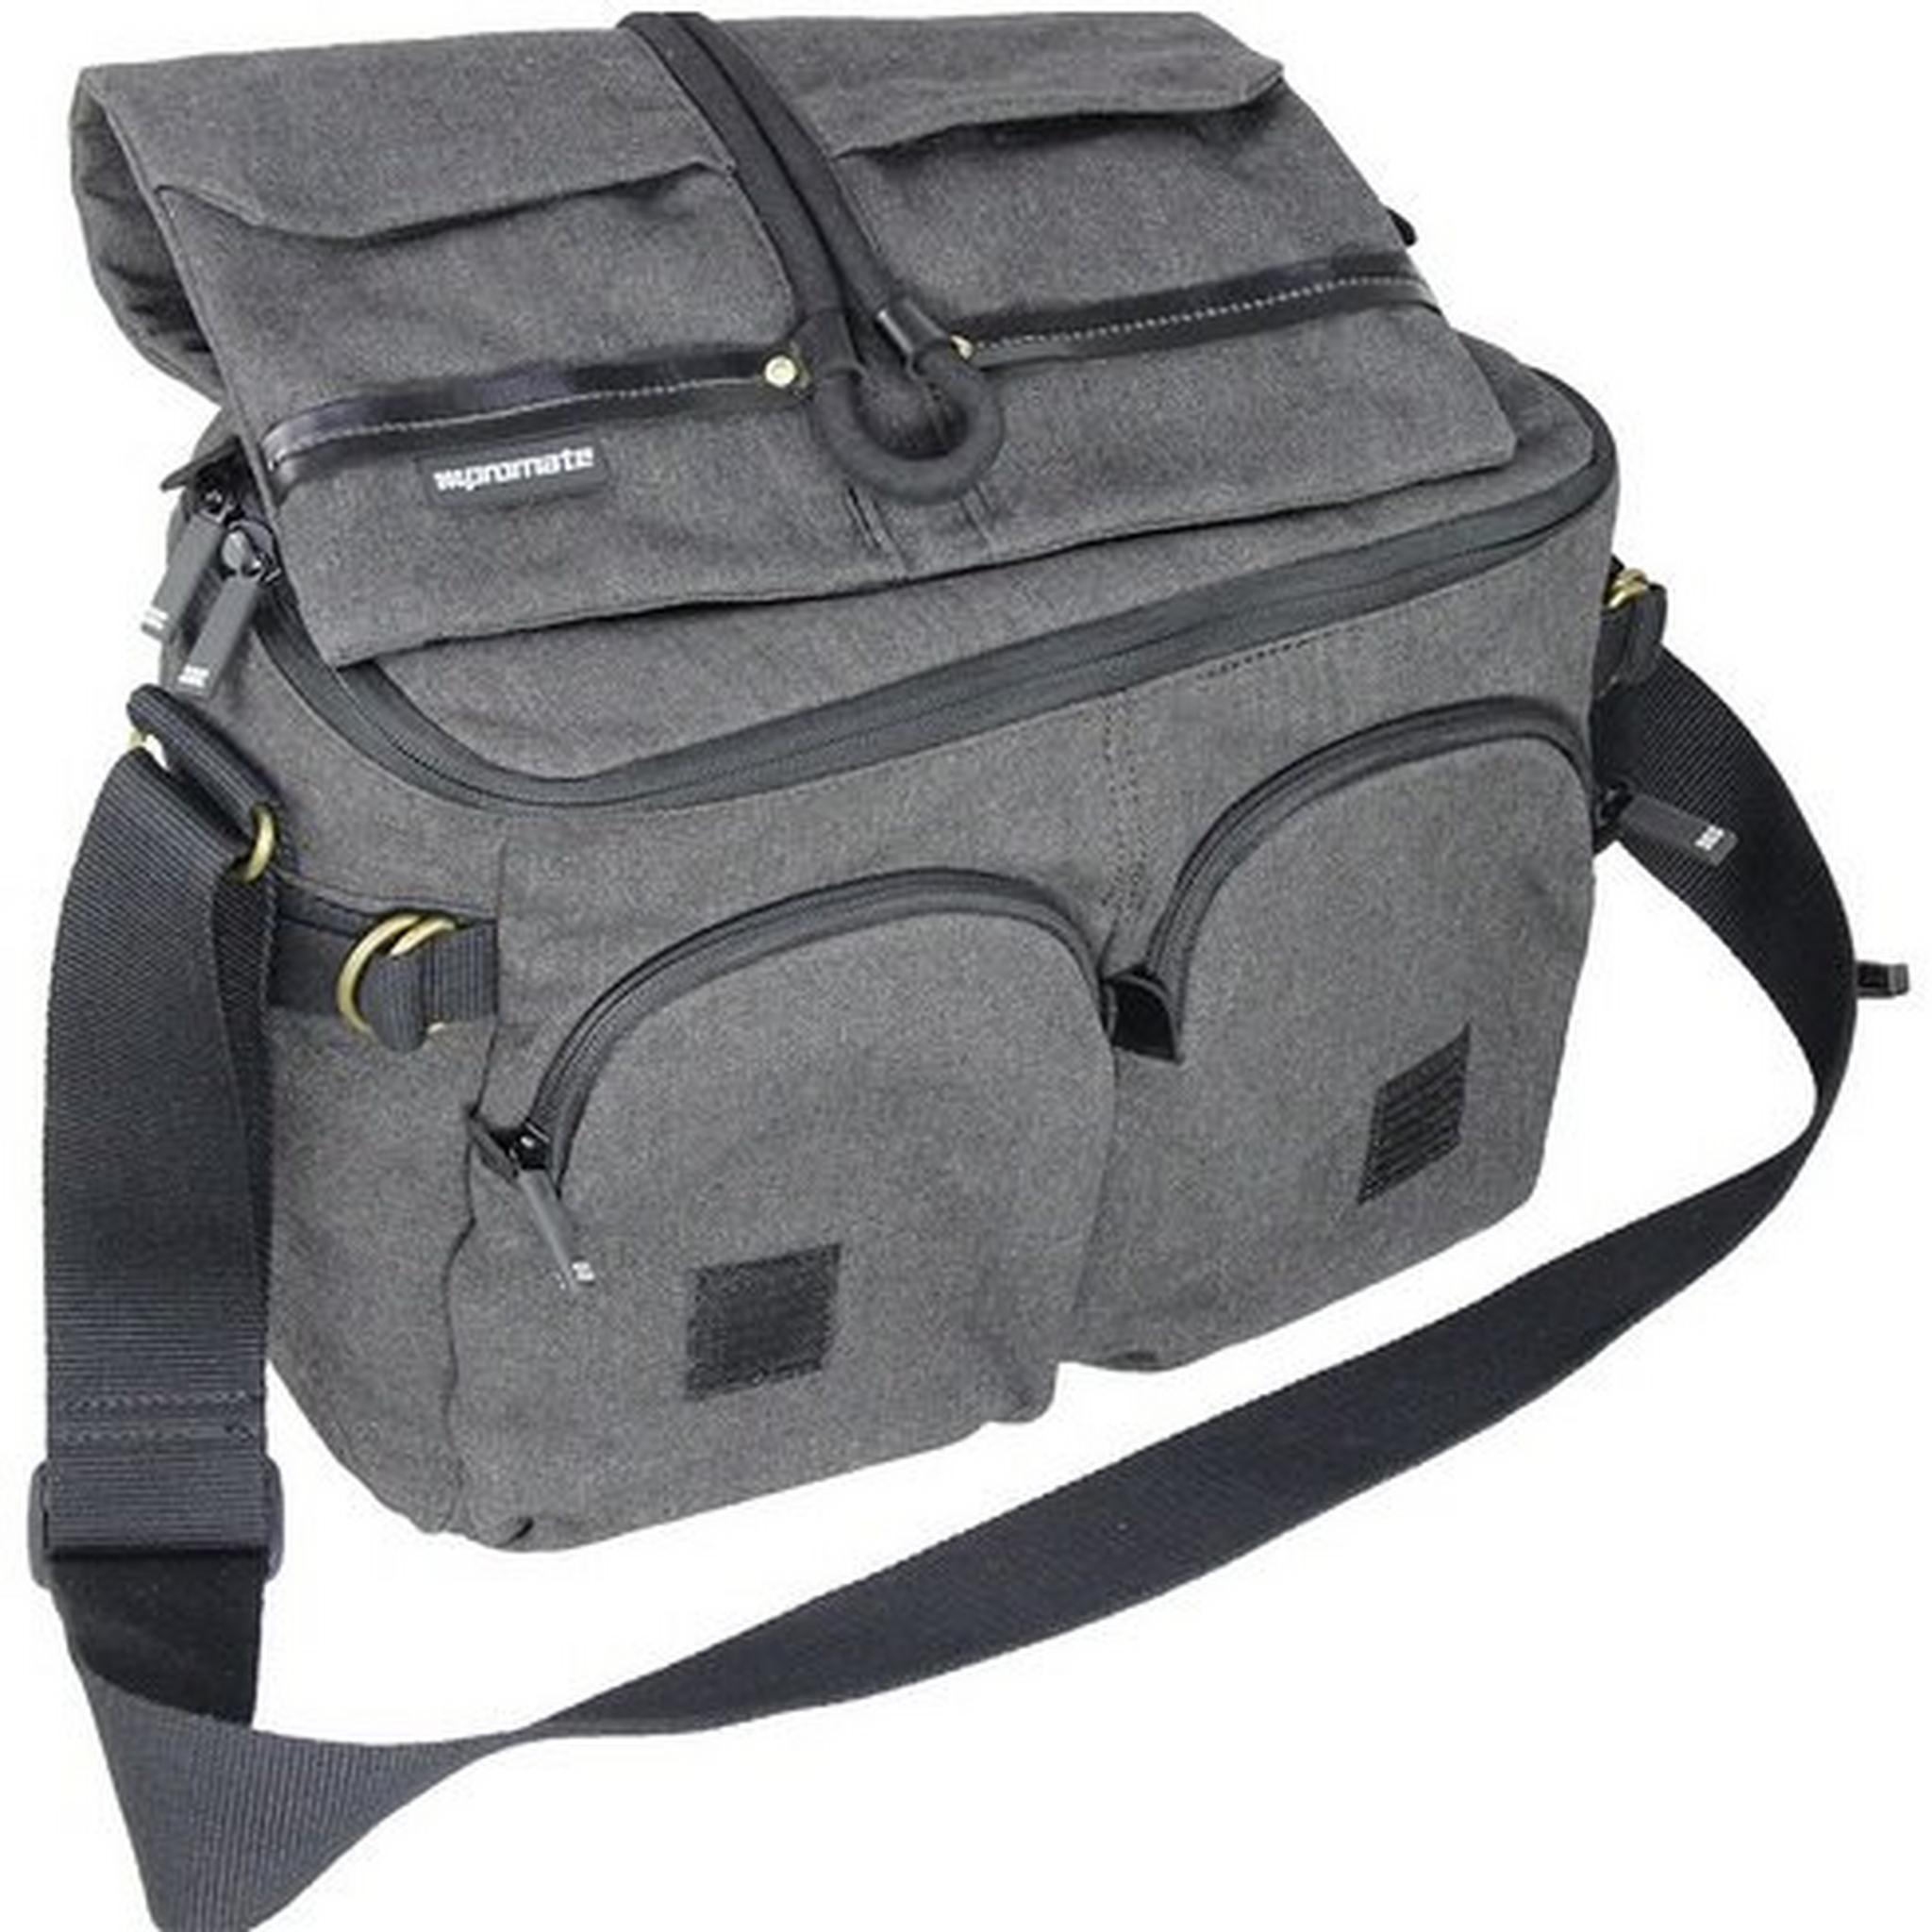 Promate Xplore Contemporary DSLR Camera Bag Large